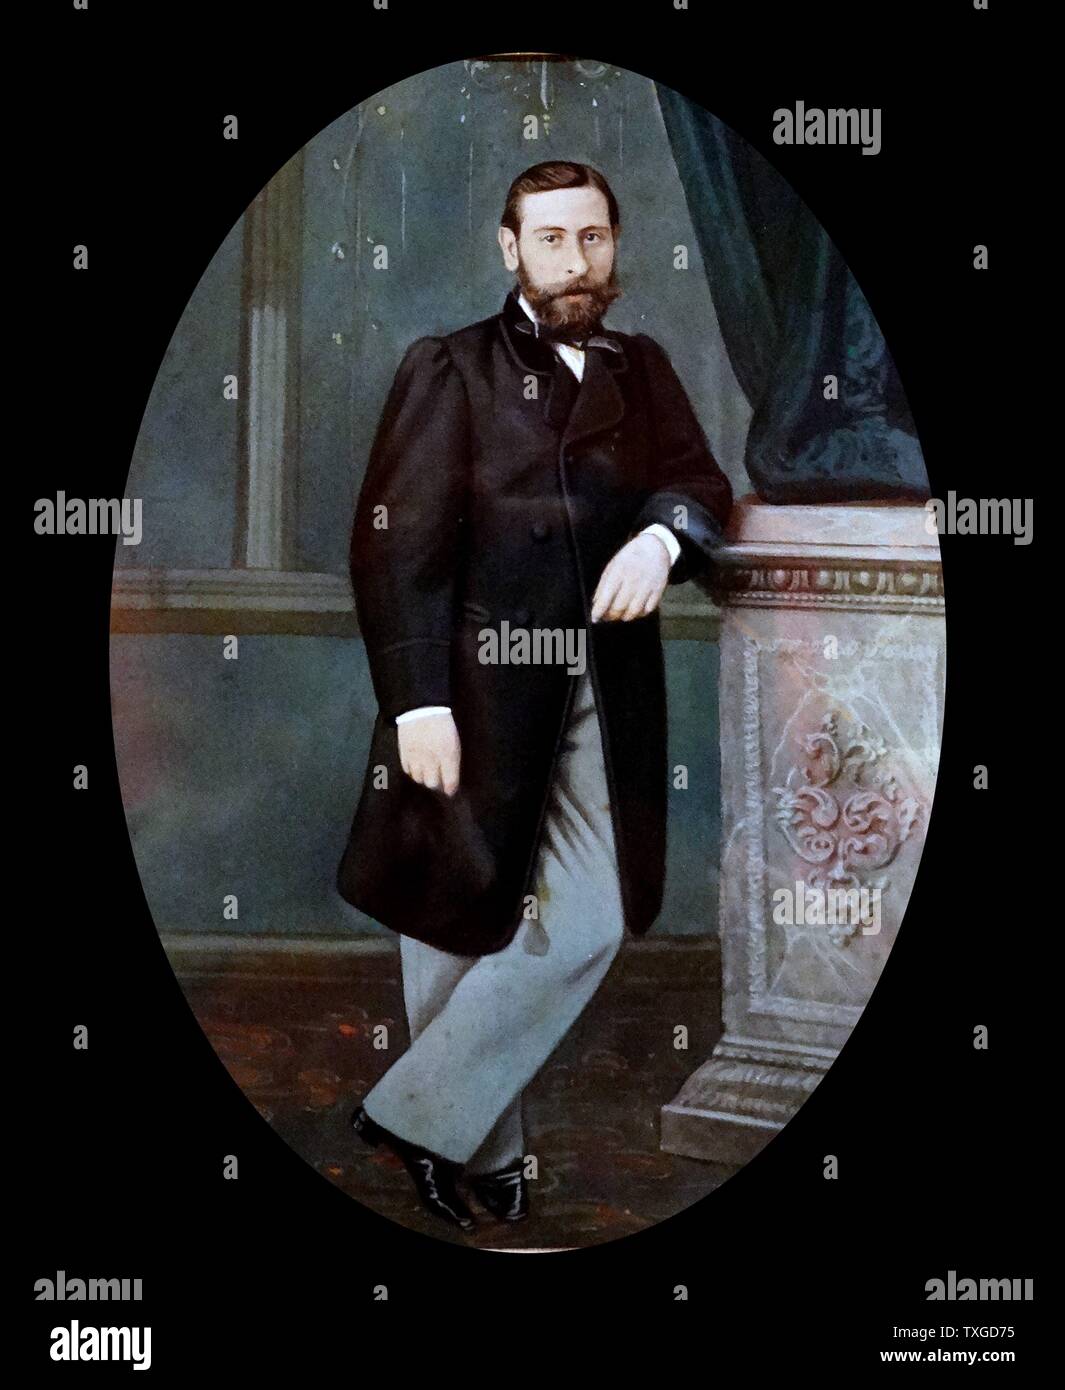 Photographie d'un homme inconnu, par le napoléon des studios photographiques :(Barcelone, 1863) Banque D'Images